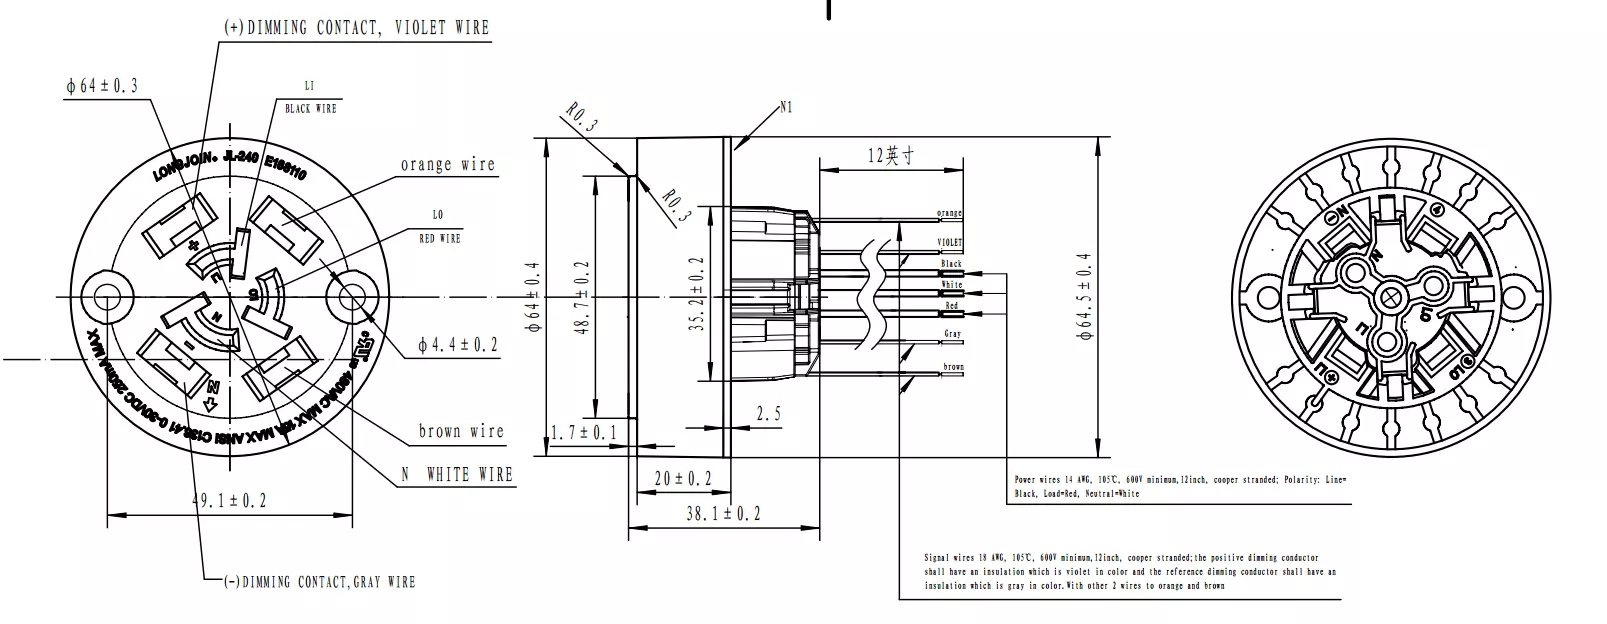 photocontrol housing,7pin base (ansi c136.41 standard)